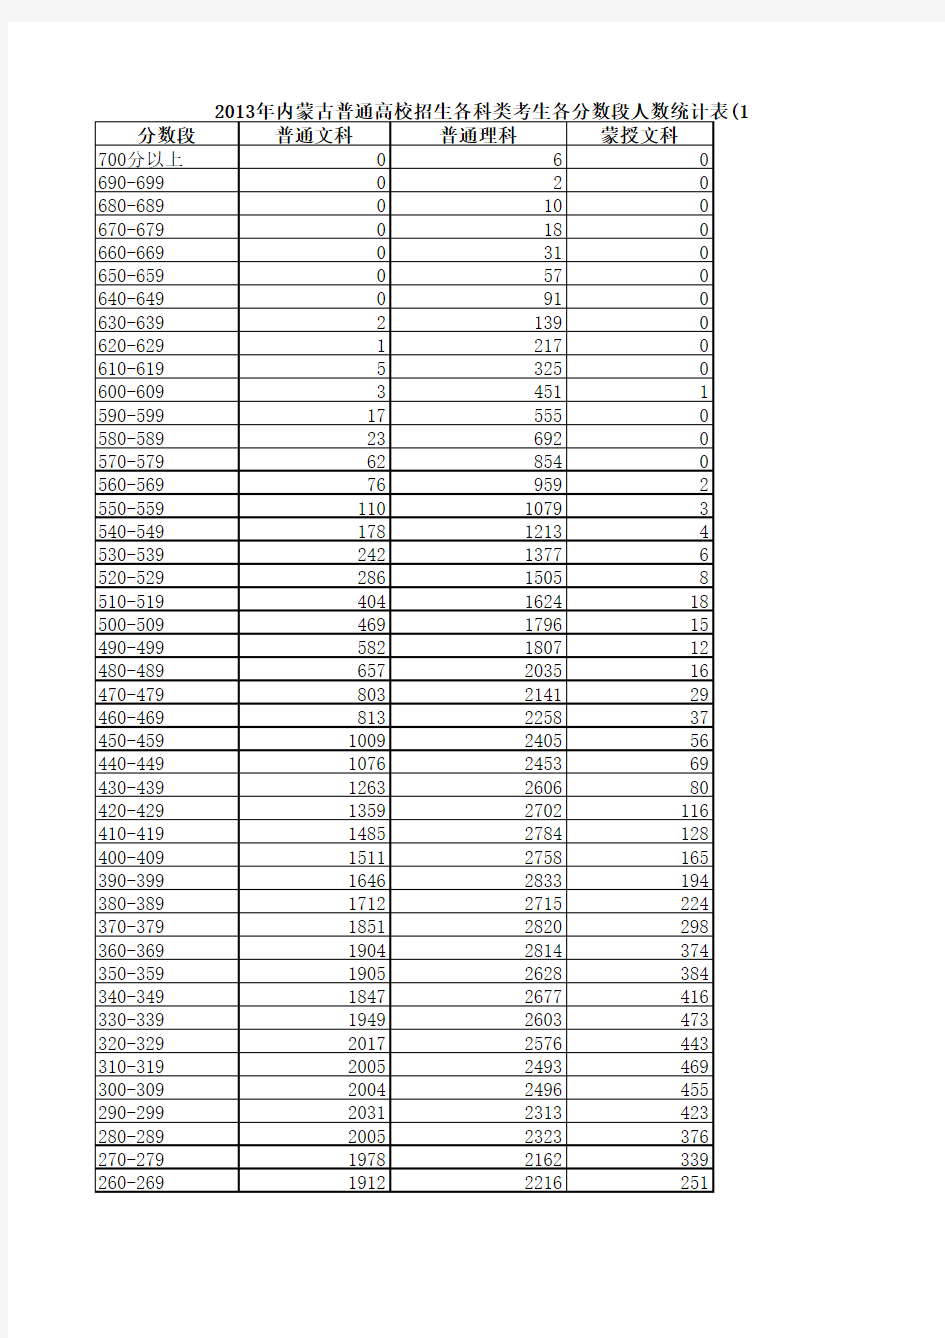 2013年内蒙古普通高校招生各科类考生各分数段人数统计表(10分一段)